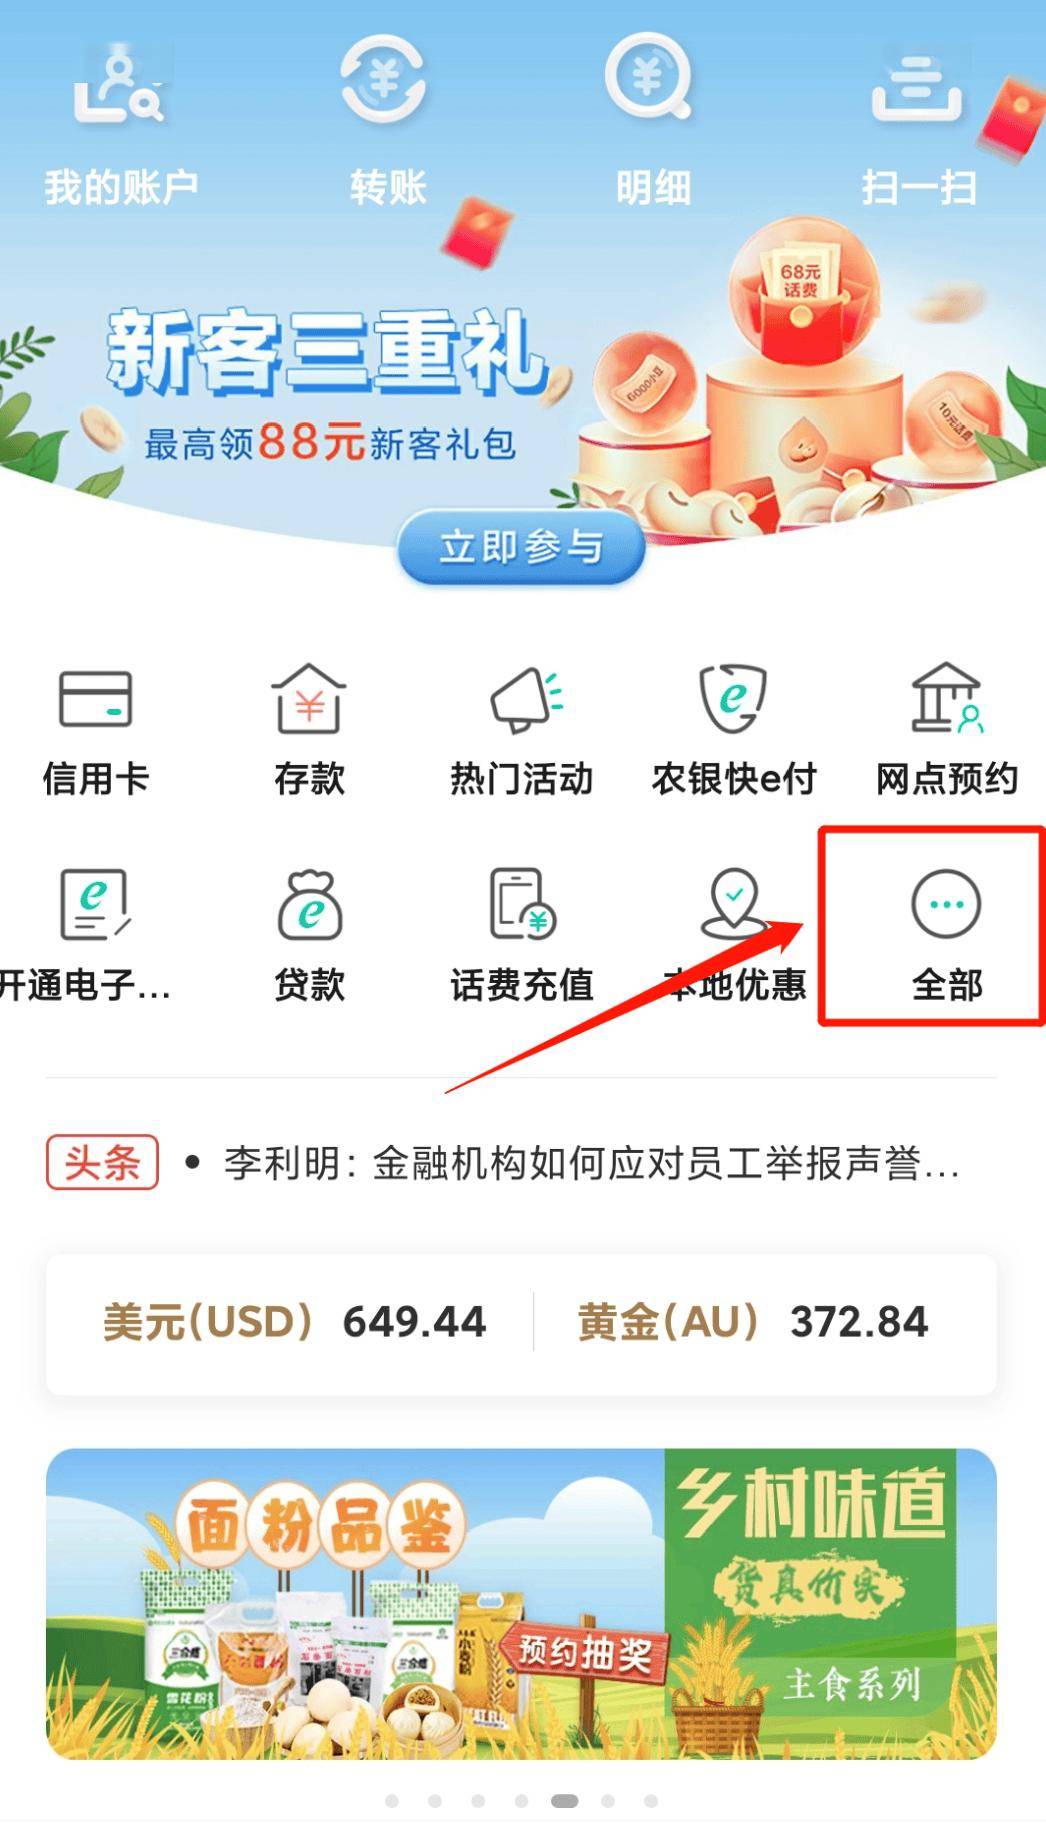 1下载中国农业银行appapp端三https://e